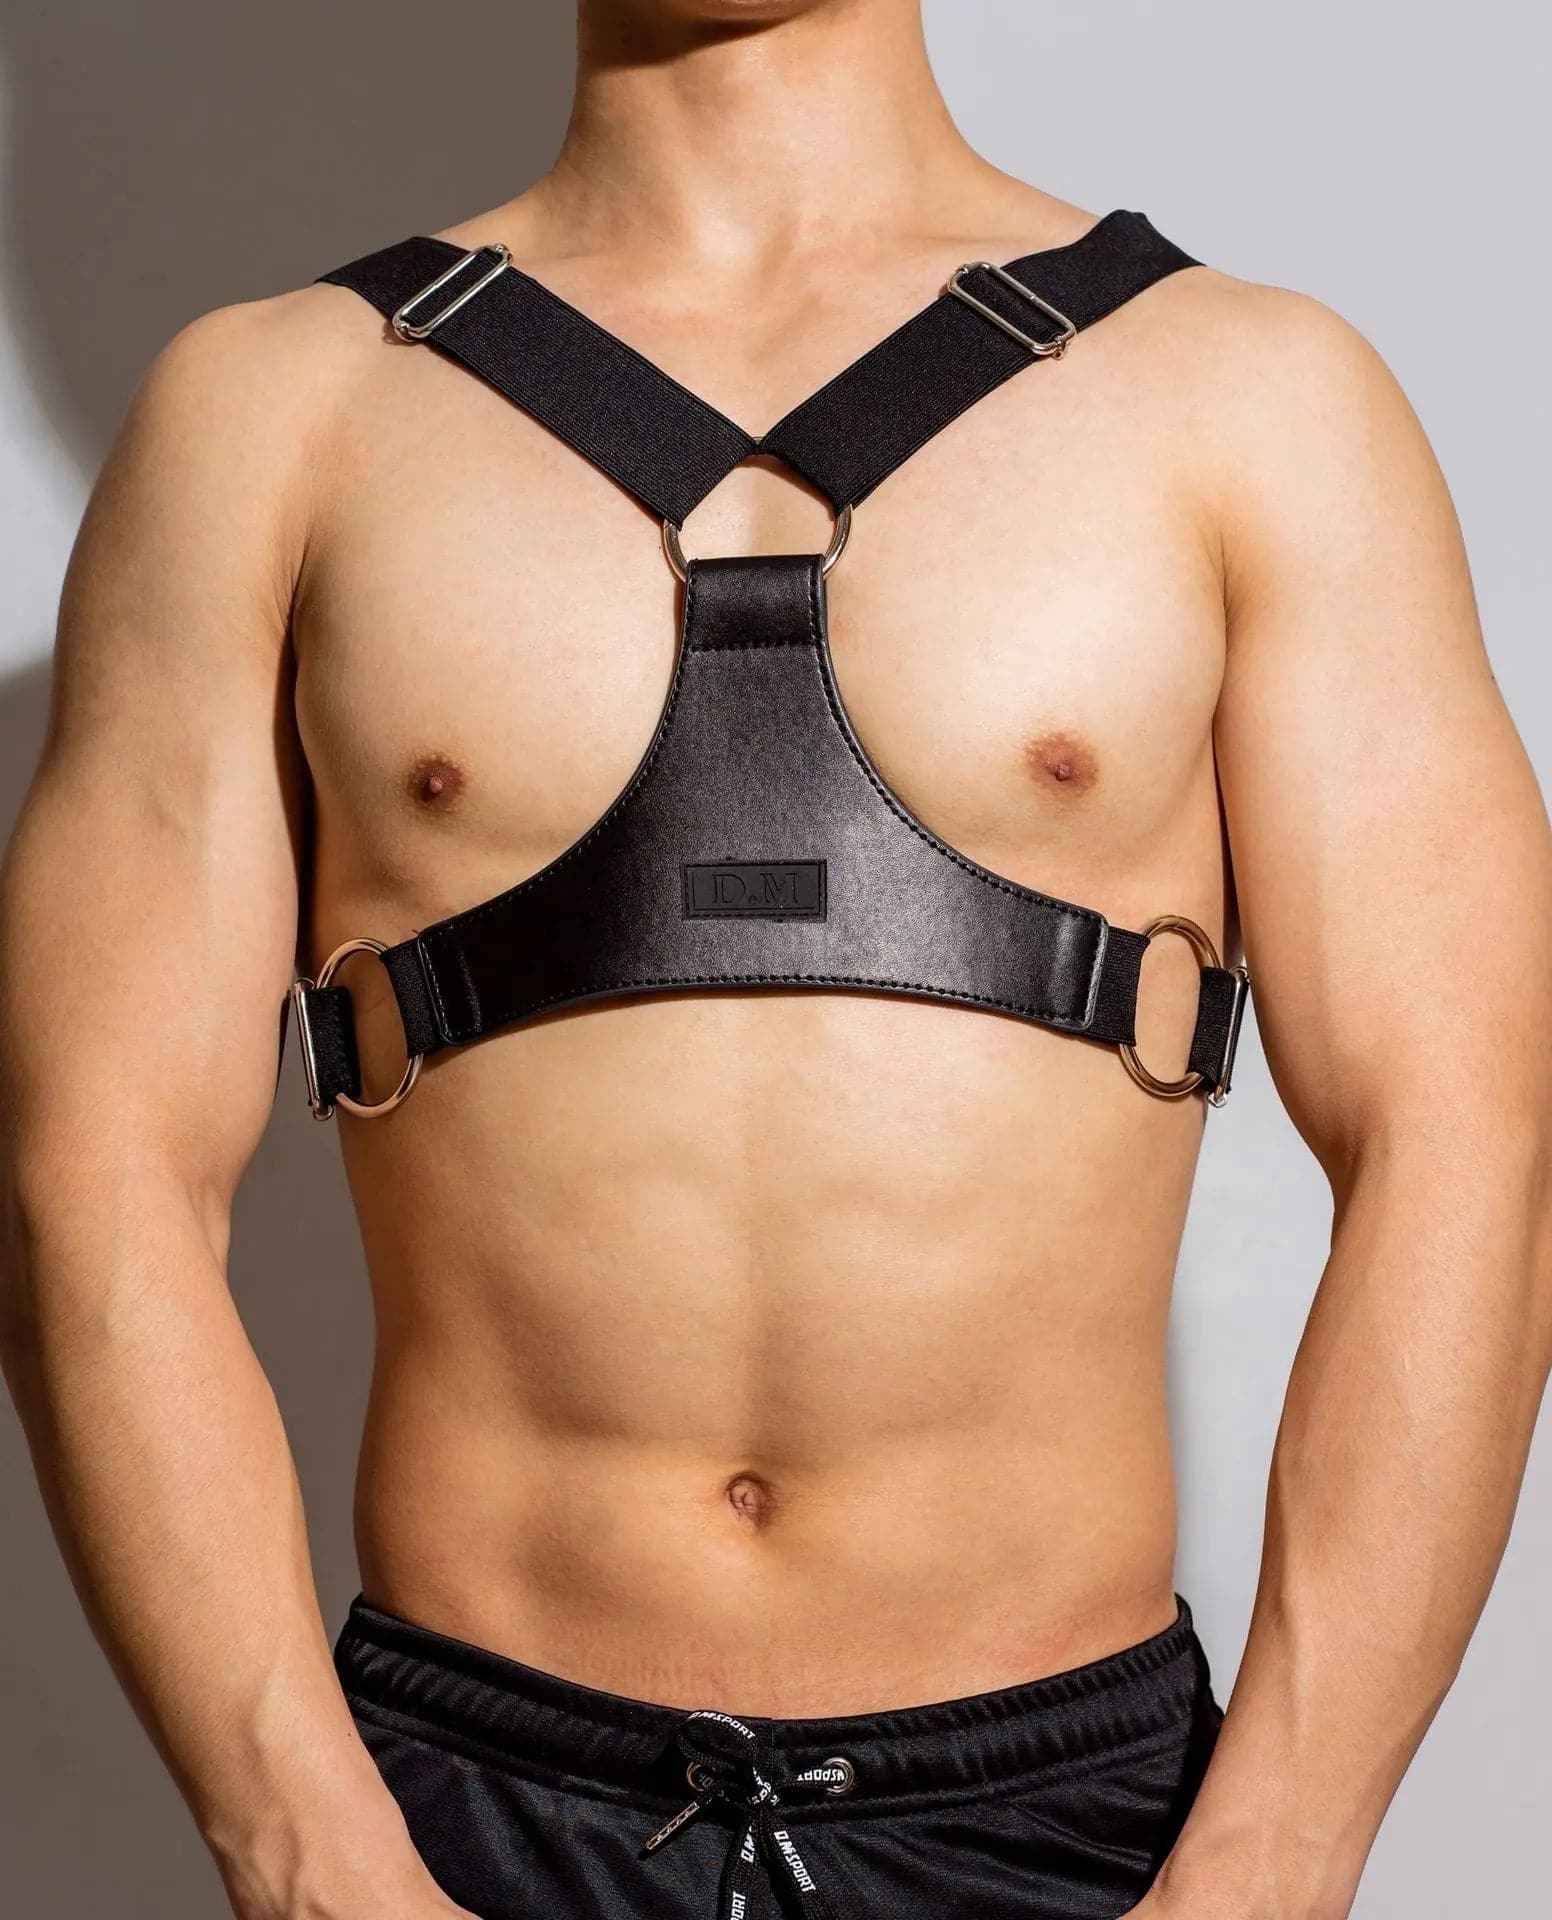 D.M Men's Shoulder Strap Leather Pure Black Formal Wear with Muscle Men D.M UNDERWEAR